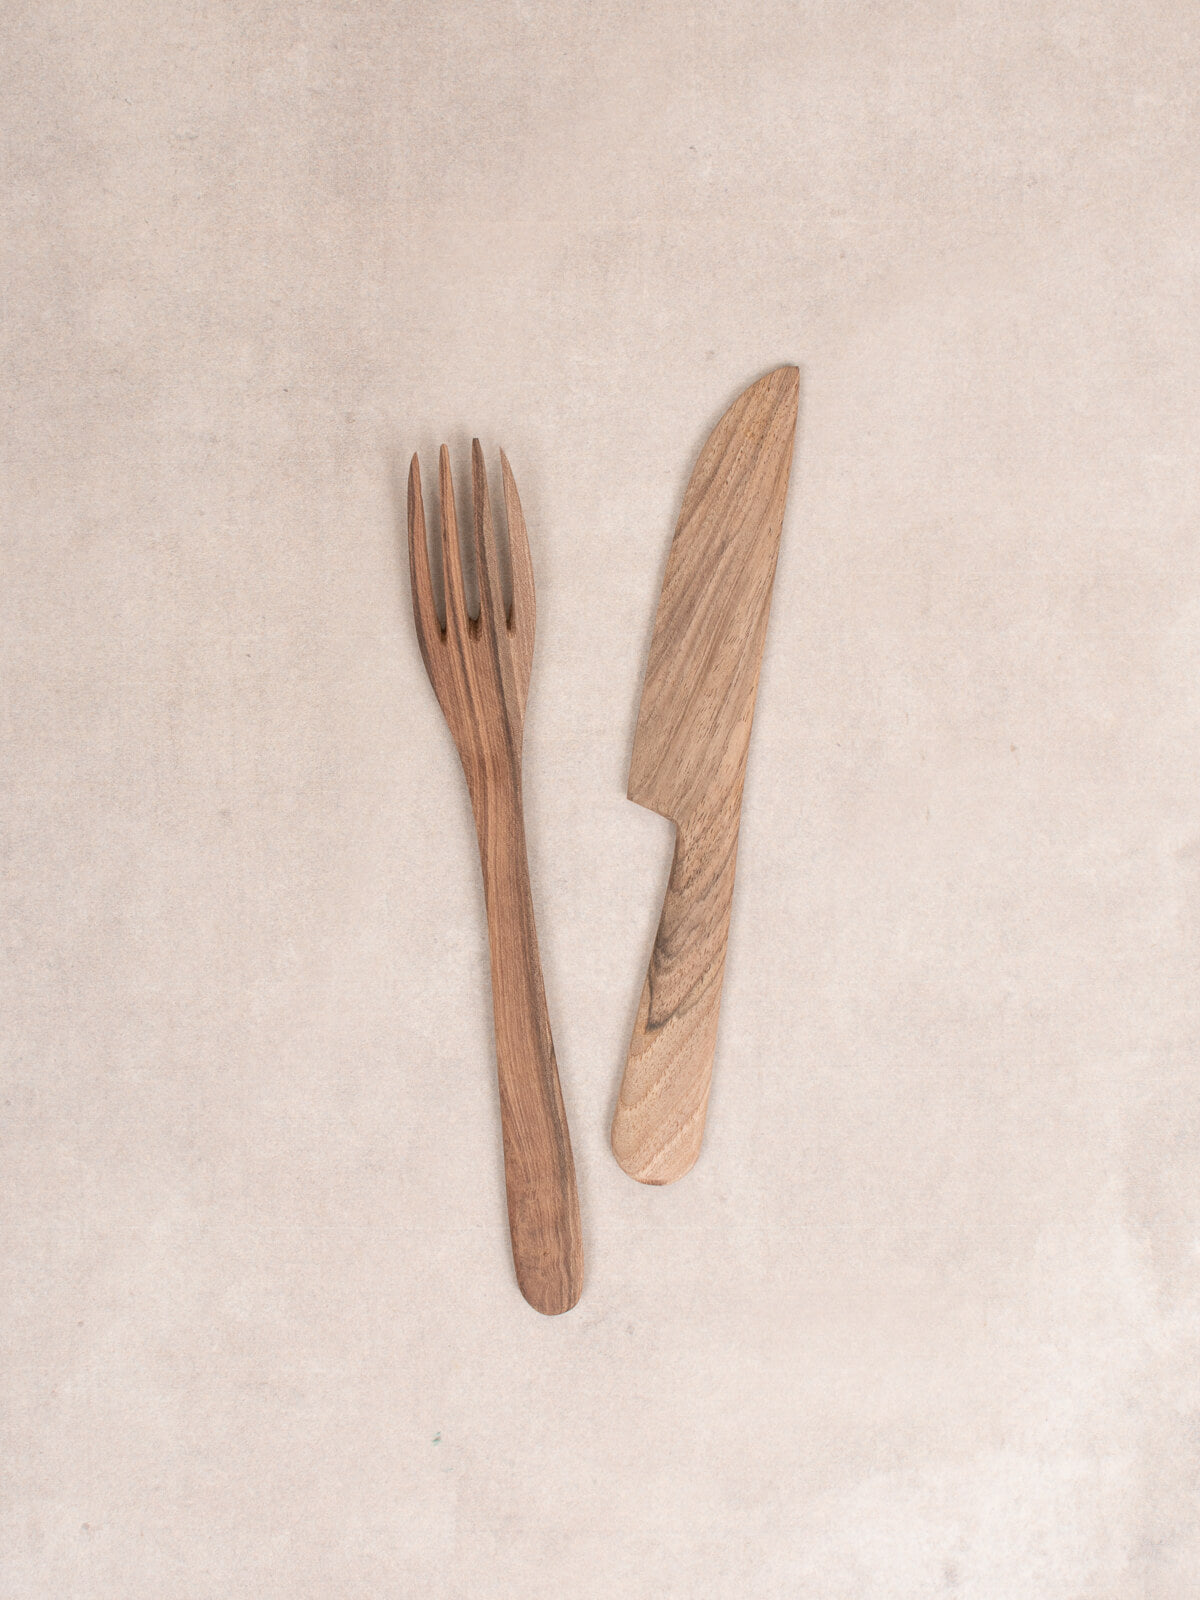 Walnut Wood Knife and Fork Set